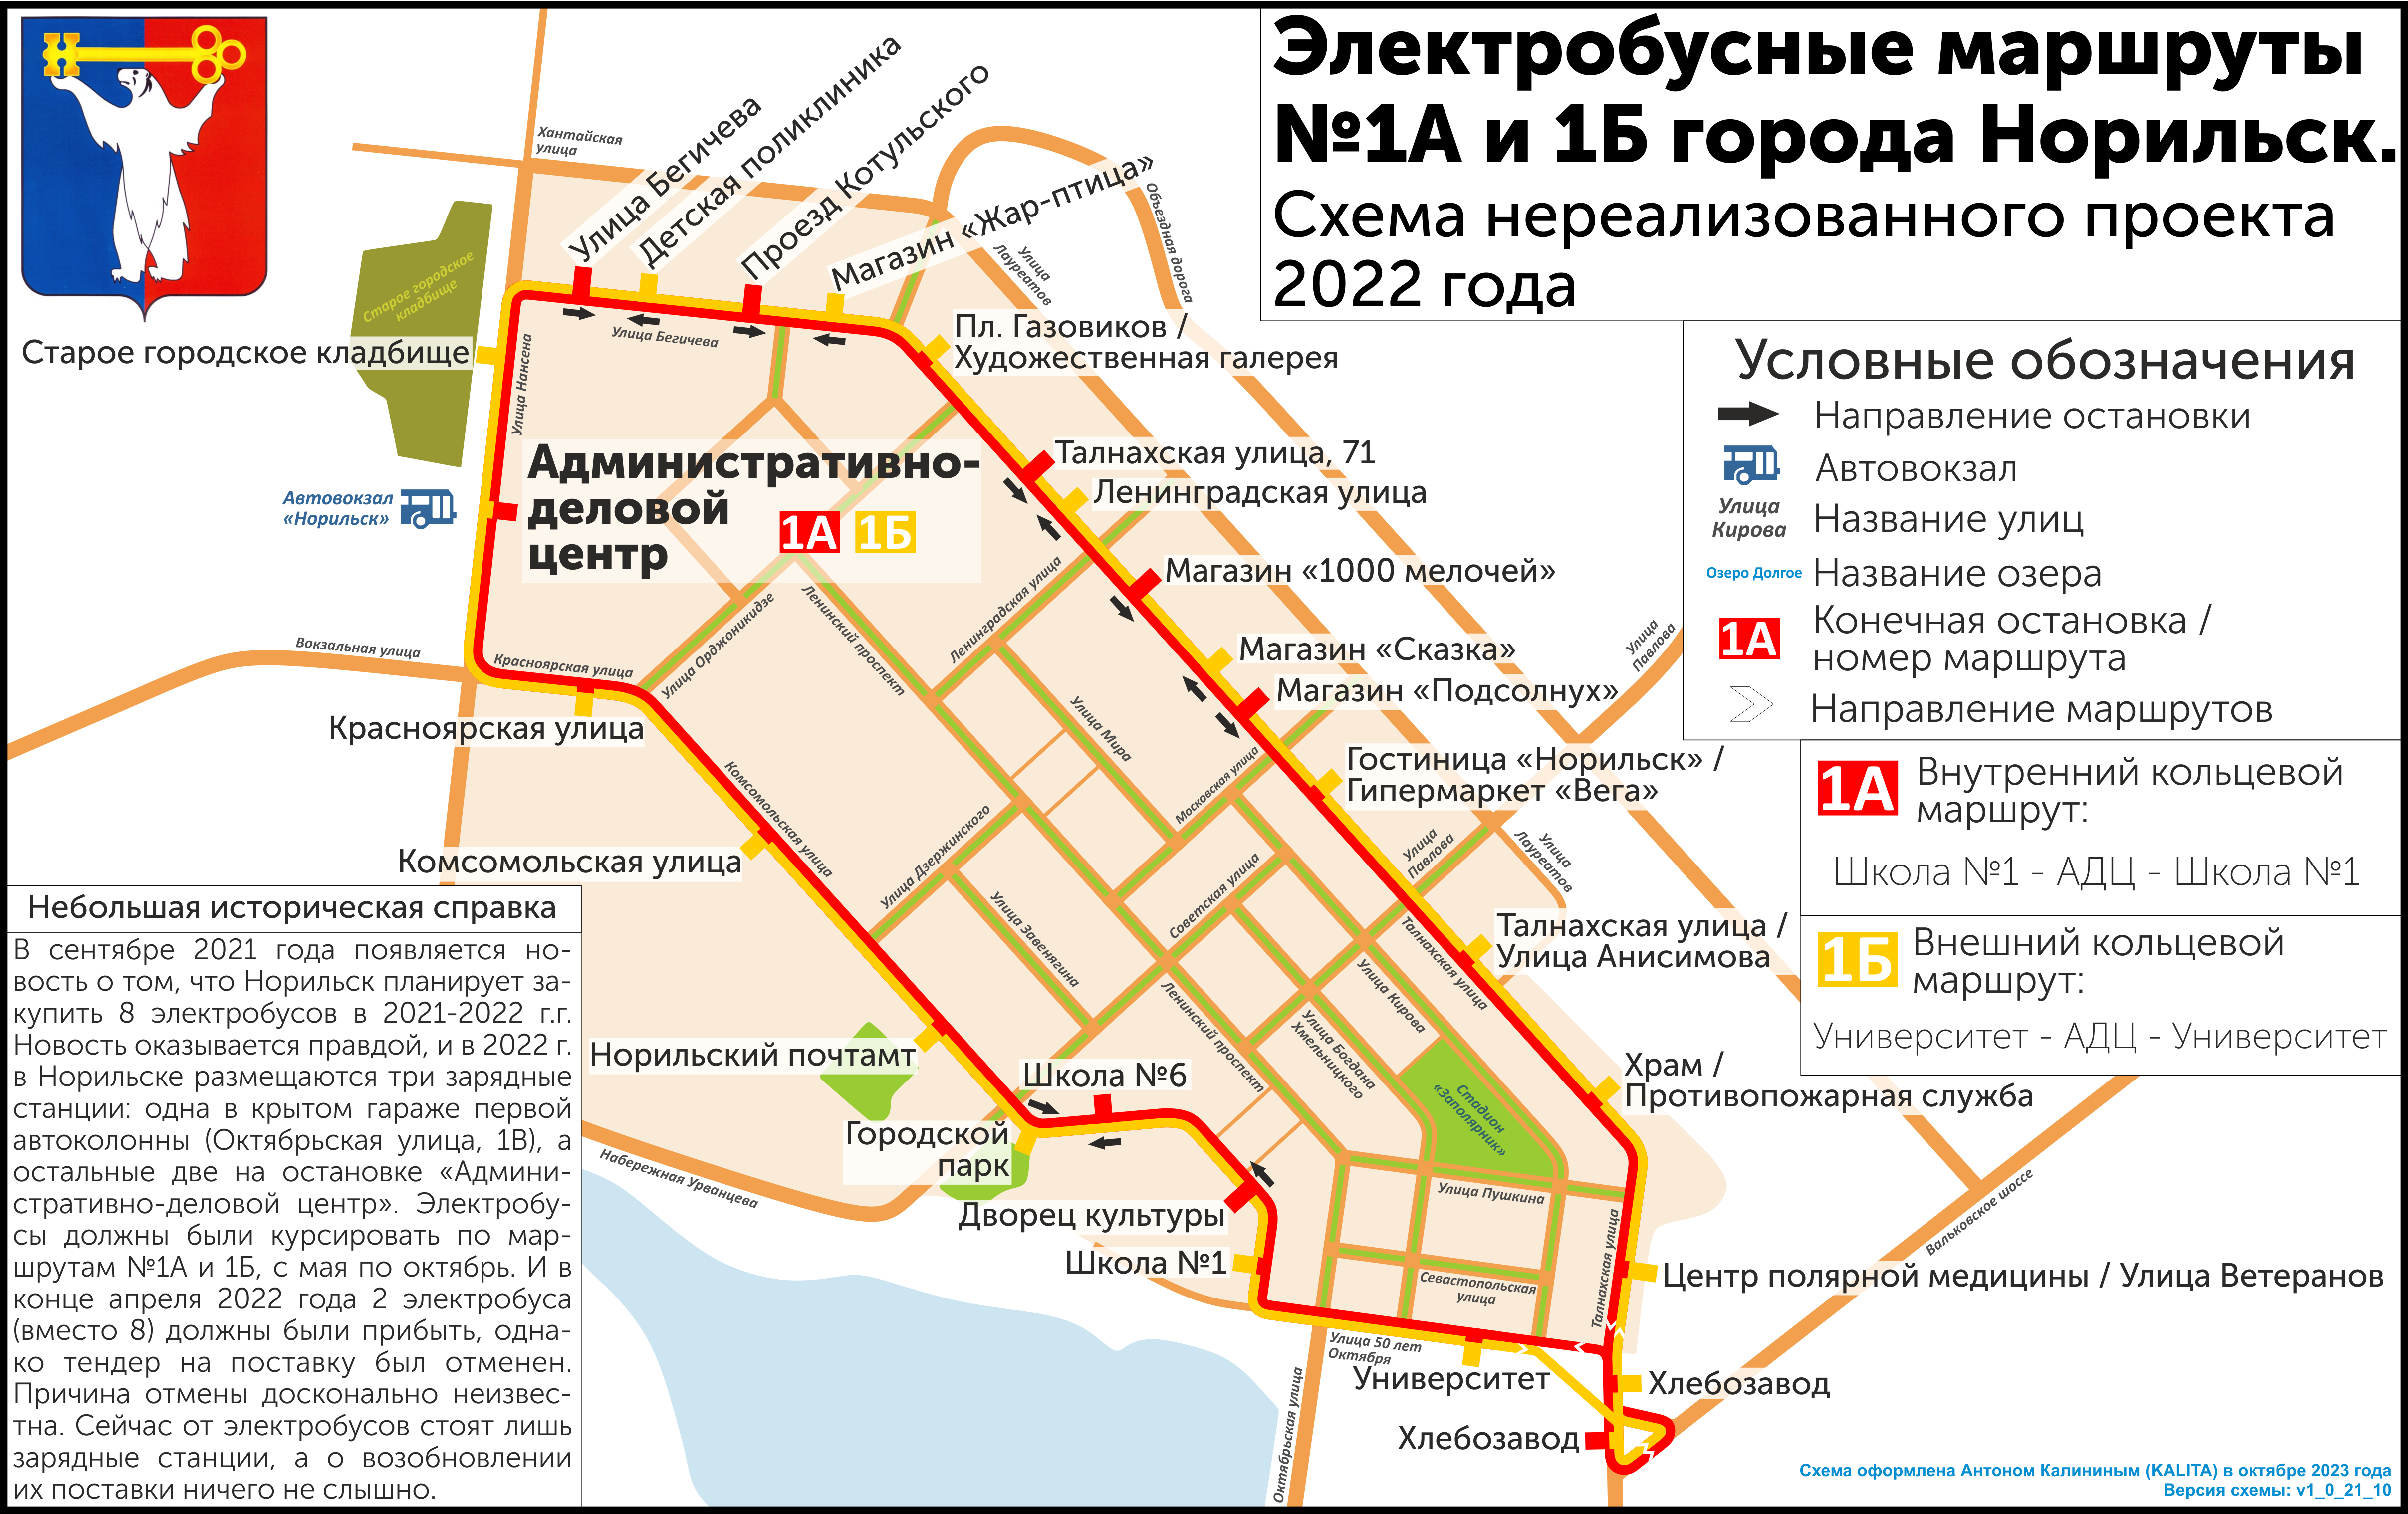 Норильск — Нереализованный проект электробуса от 2022 г.; Норильск — Схемы